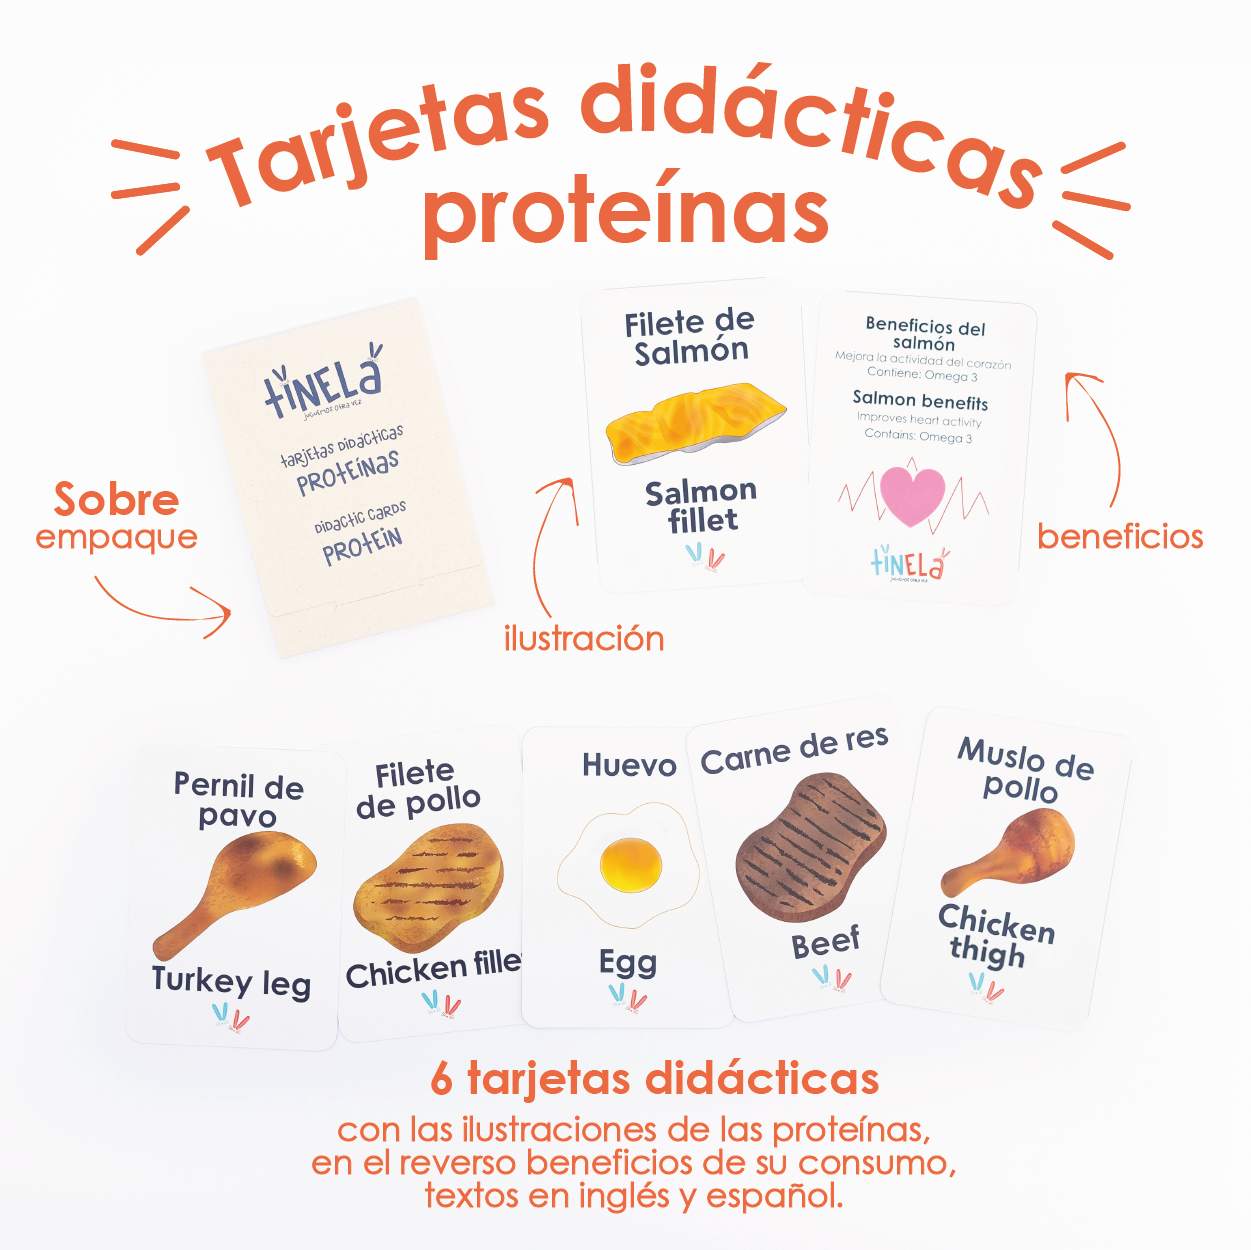 Kit De Proteinas